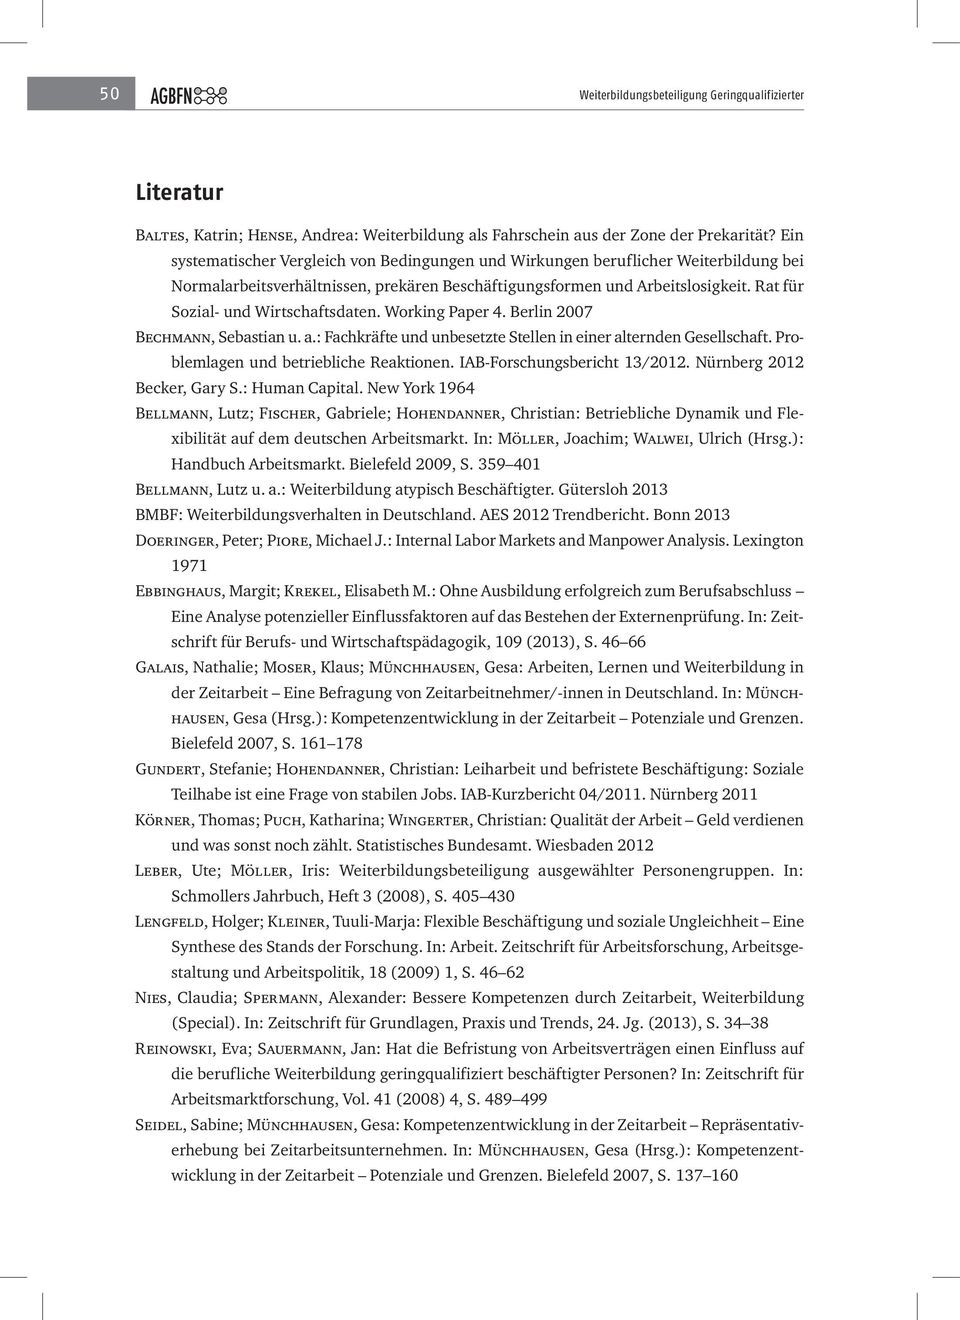 Rat für Sozial- und Wirtschaftsdaten. Working Paper 4. Berlin 2007 Bechmann, Sebastian u. a.: Fachkräfte und unbesetzte Stellen in einer alternden Gesellschaft.